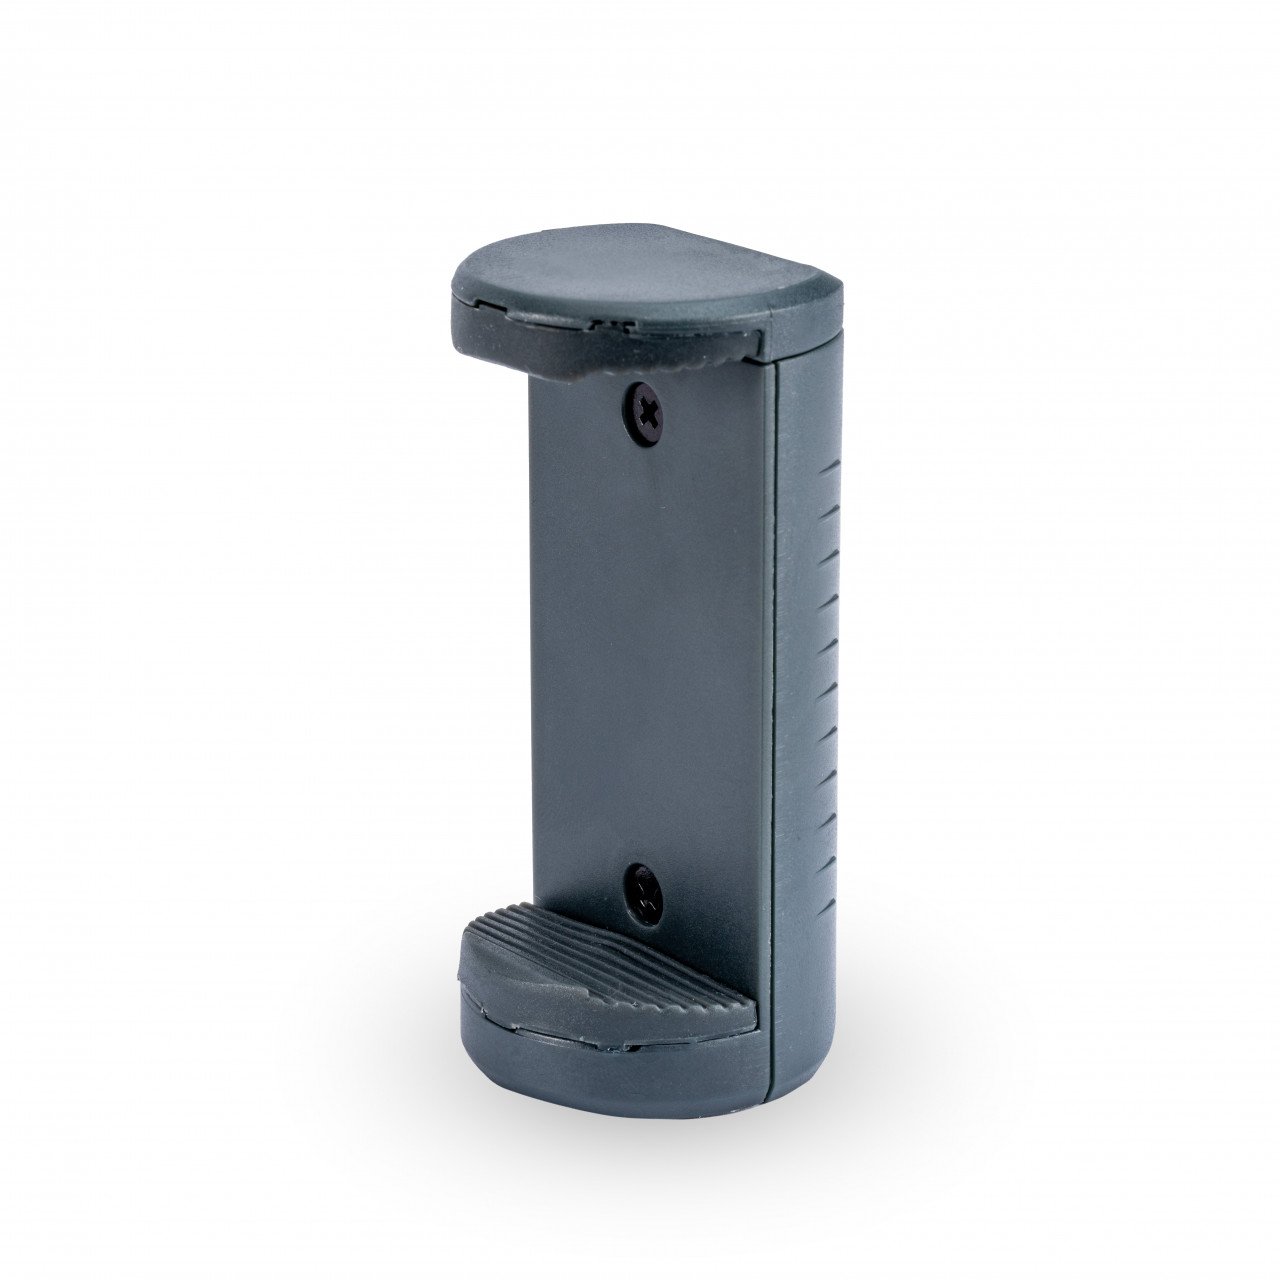 Mini- Trípode para Cámara y Móvil TT1 BP (Color Negro Perla) – Astroilusión